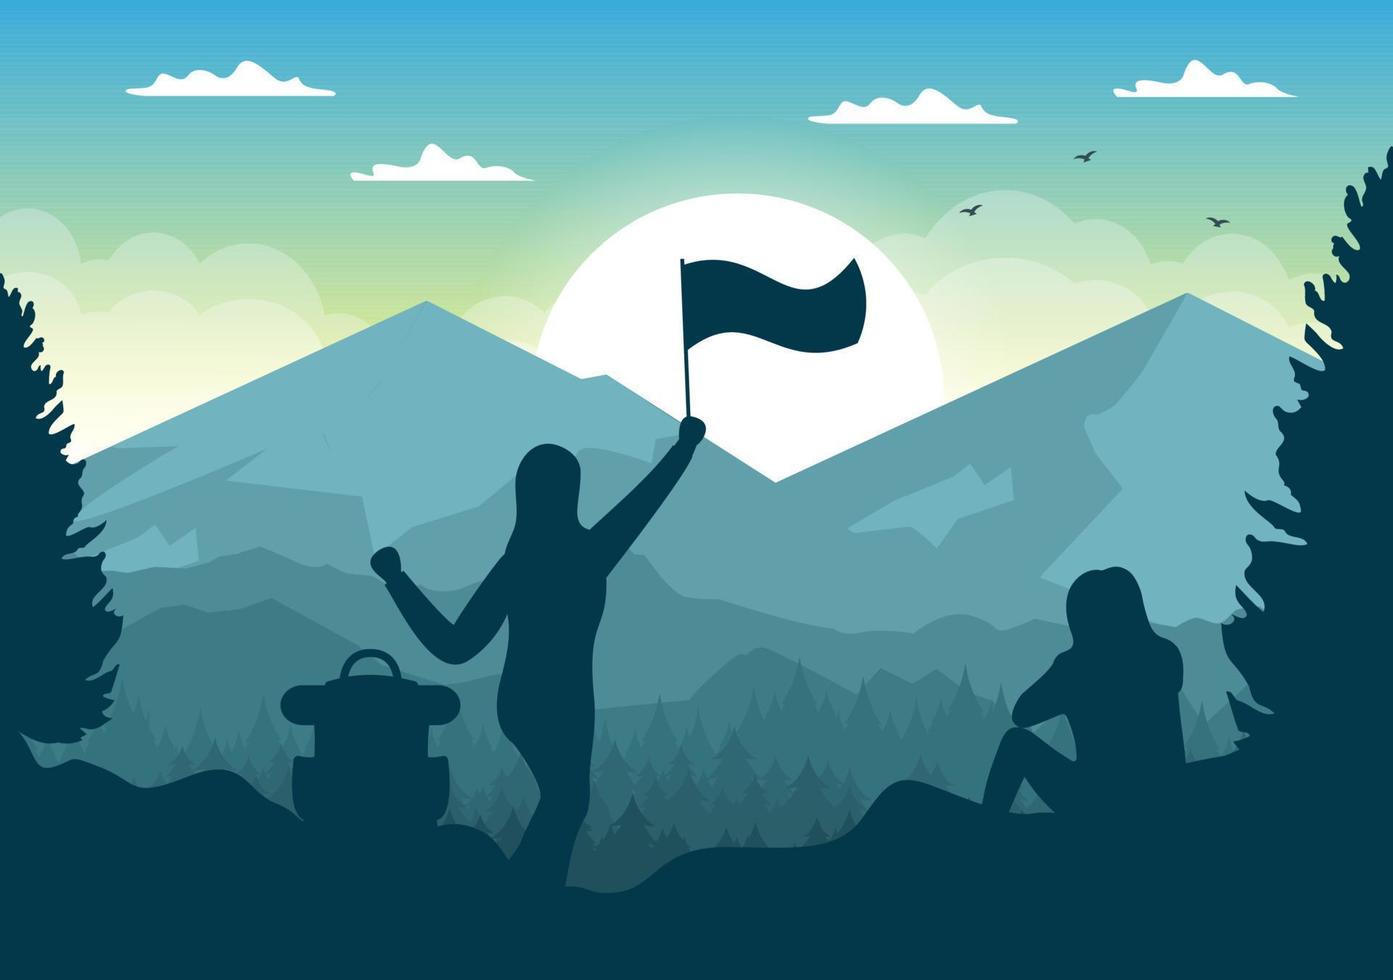 Sonnenaufgangslandschaft der Morgenszene Berge, Hügel, See und Tal in flacher Natur für Poster, Banner oder Hintergrundillustration vektor